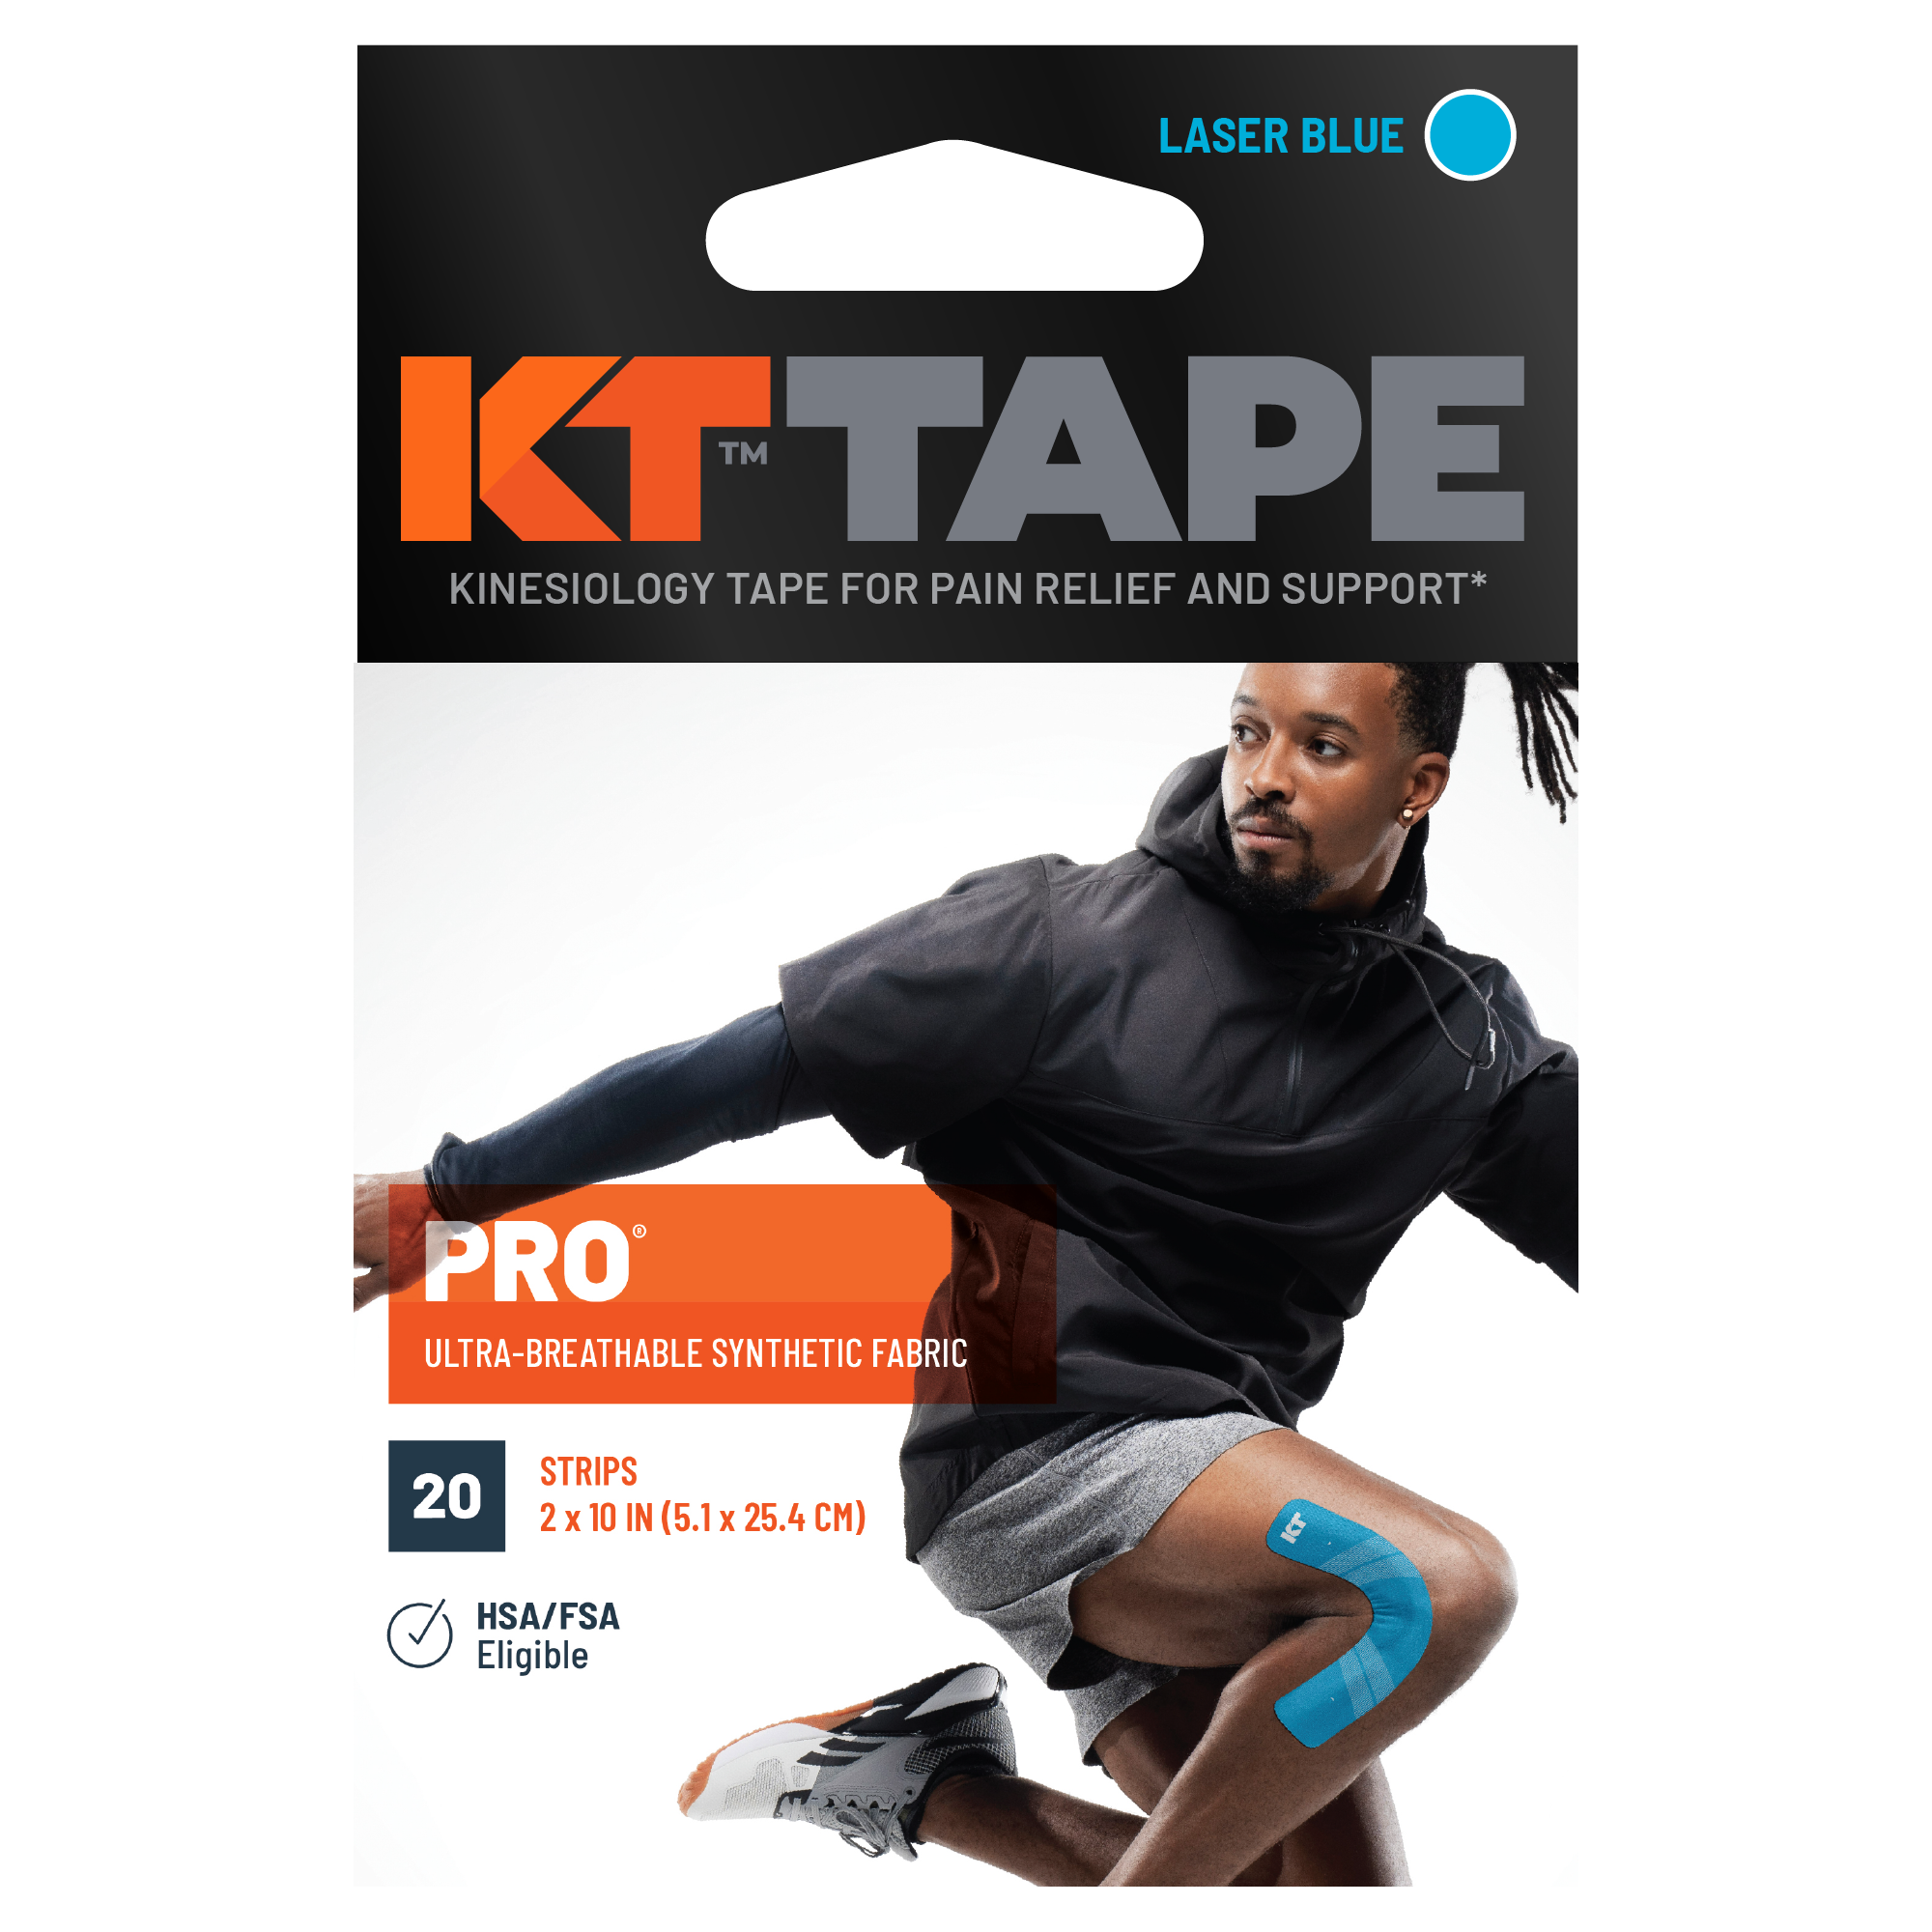 KT Tape Pro Packaging#color_laser-blue